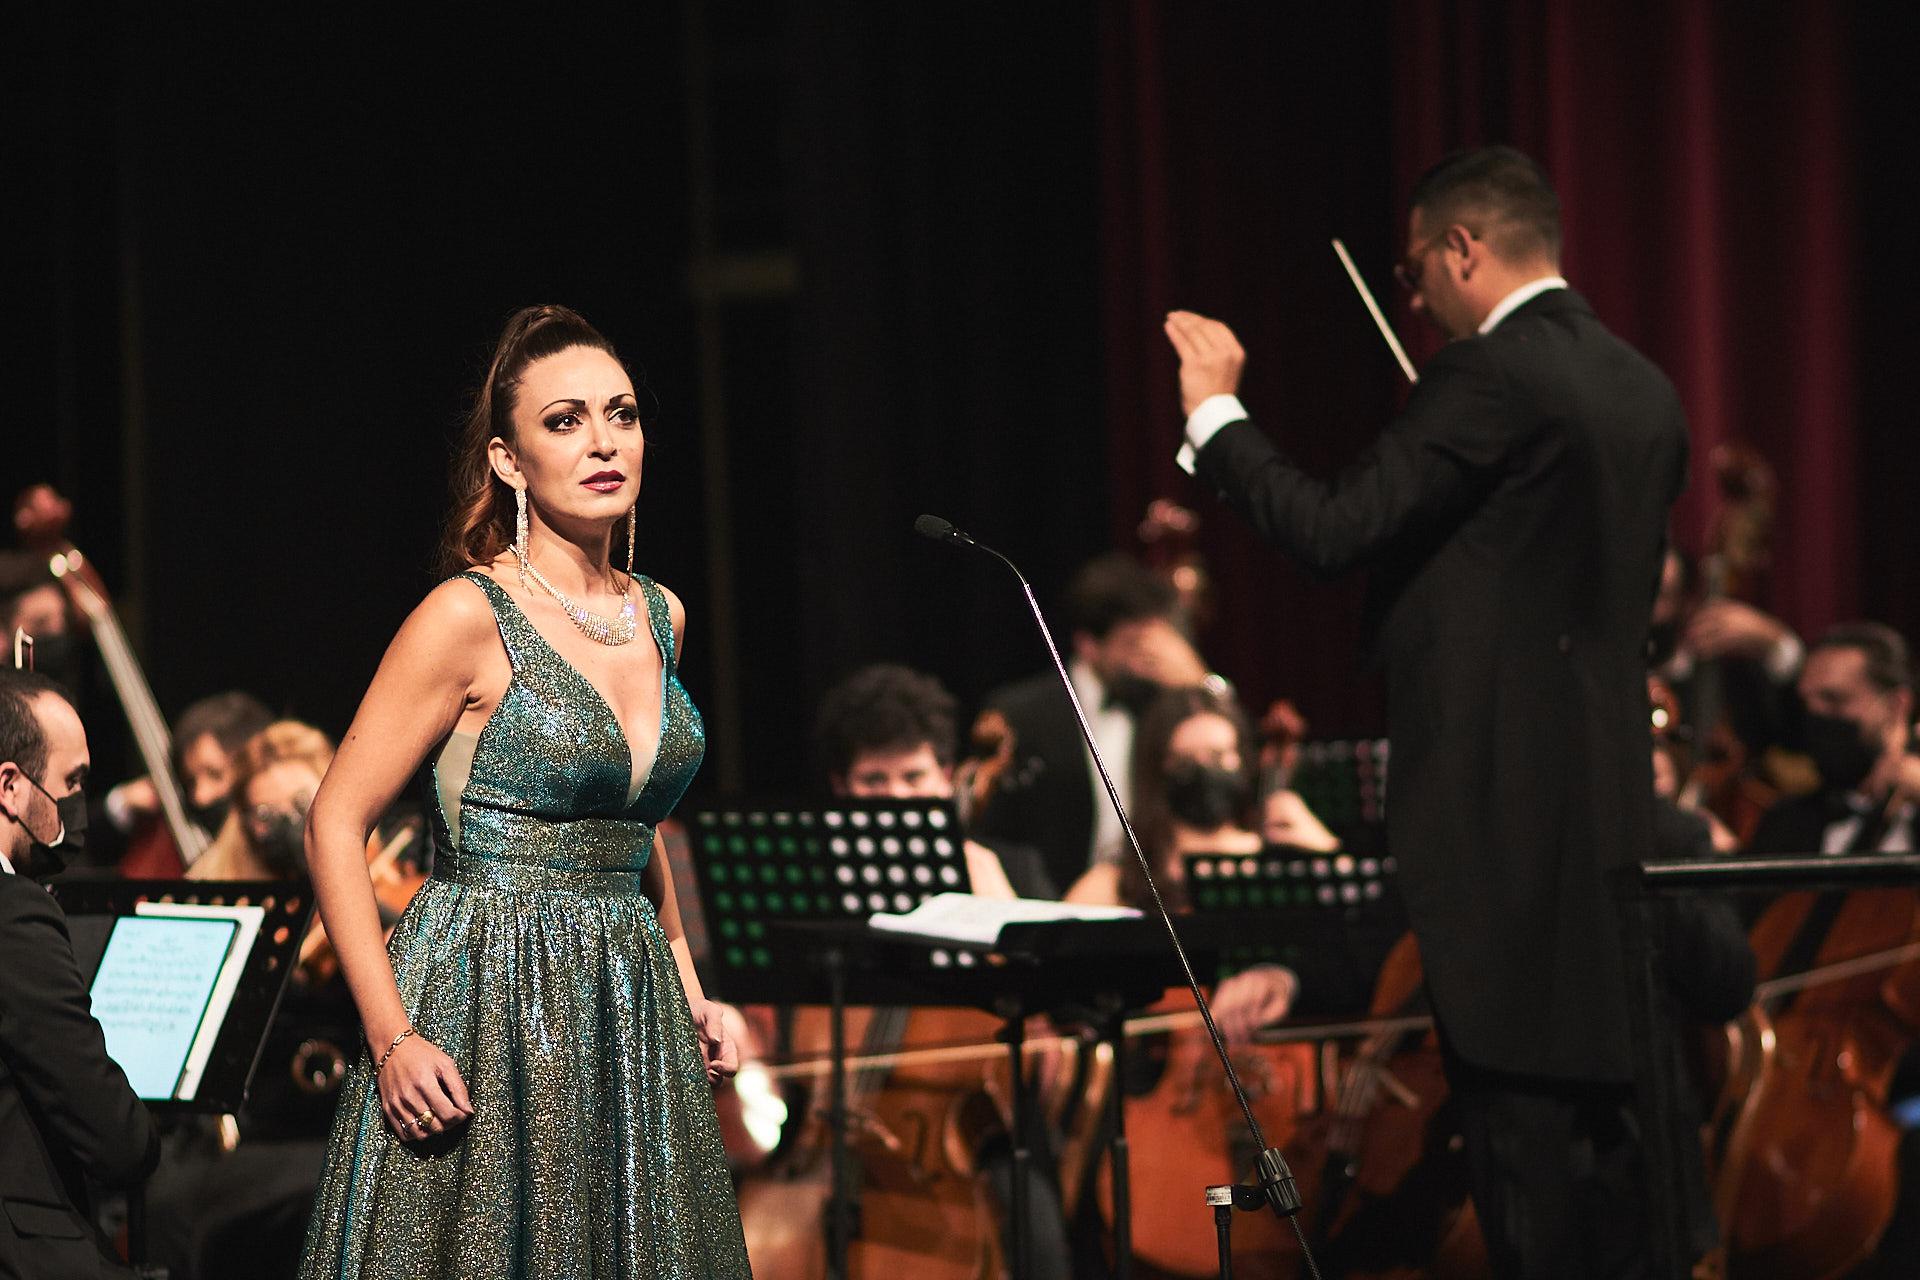 Il Mondo - необикновено ново концертно събитие в София през юли